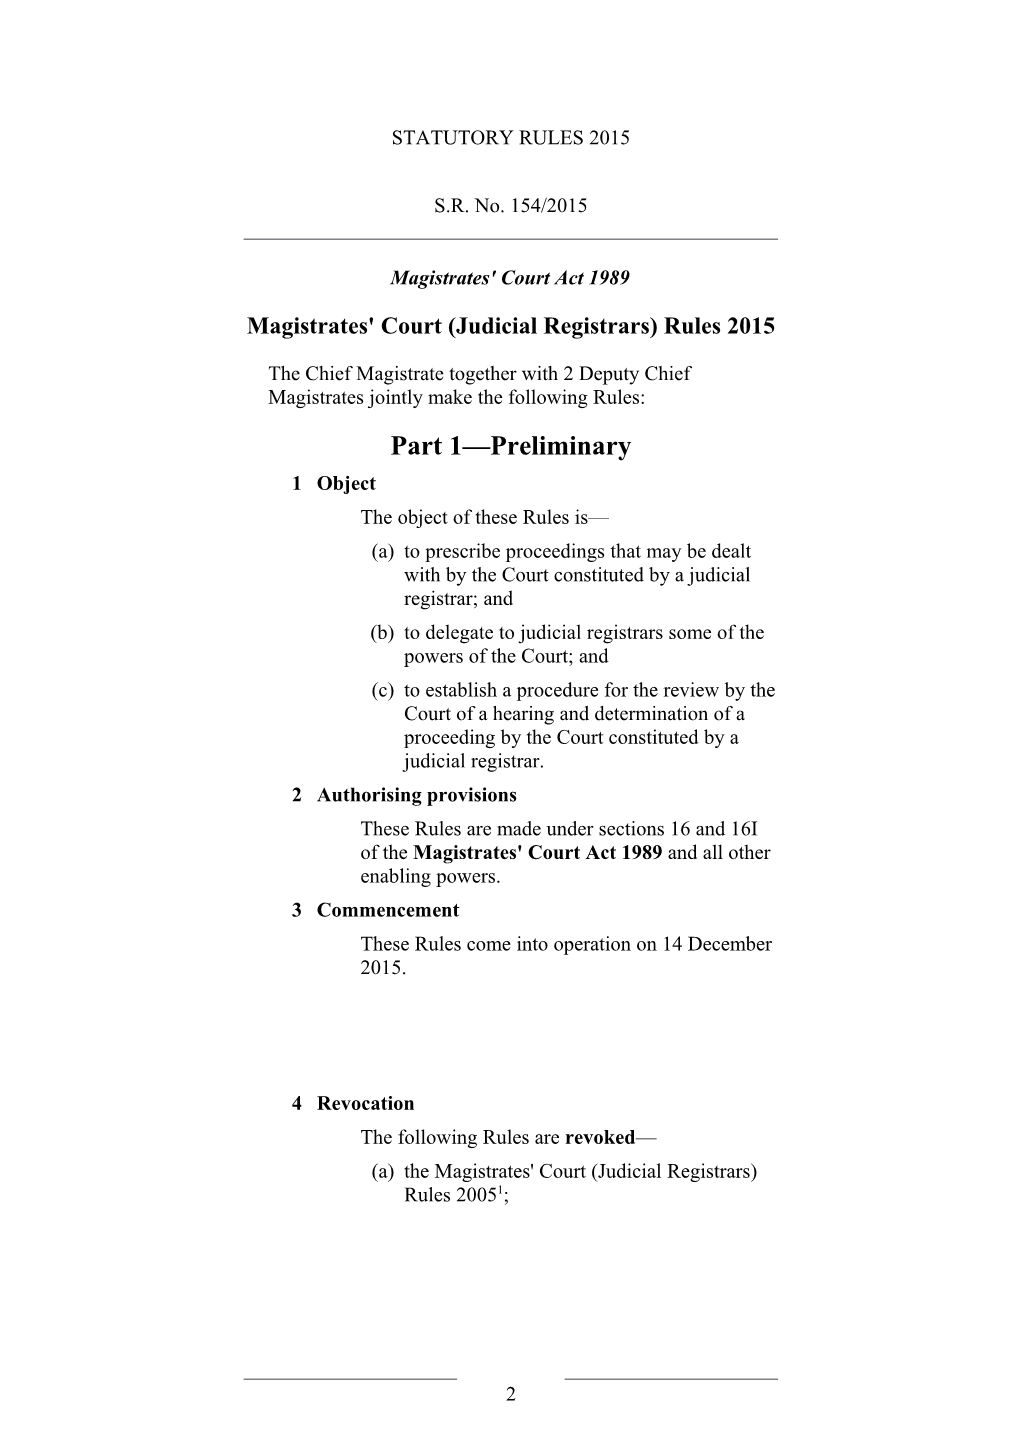 Magistrates' Court (Judicial Registrars) Rules 2015